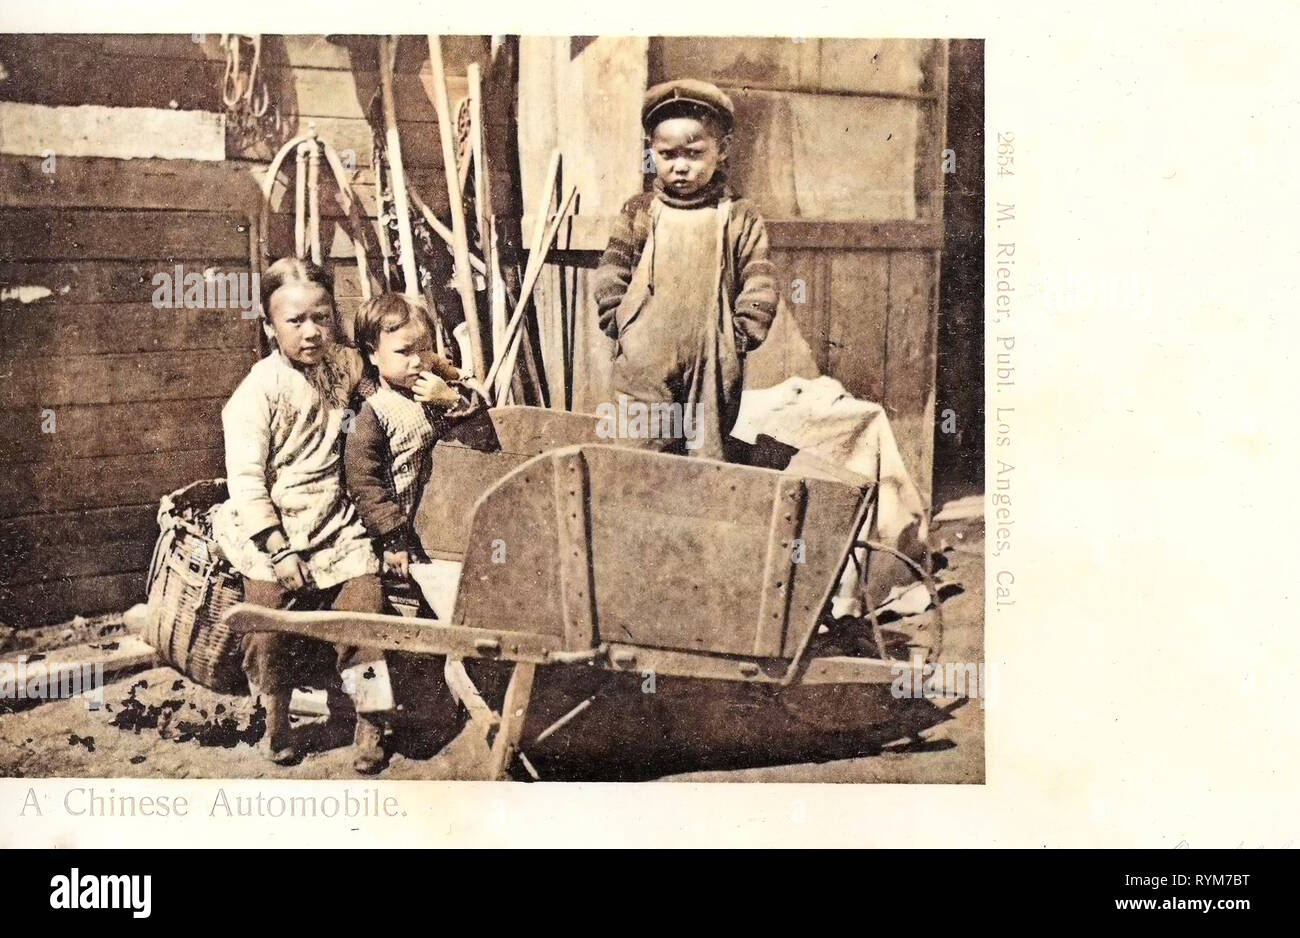 Les brouettes en bois debout, garçons, filles permanent, les portraits de groupe avec 3 personnes, 1903 cartes postales, 1903, une automobile chinois Banque D'Images